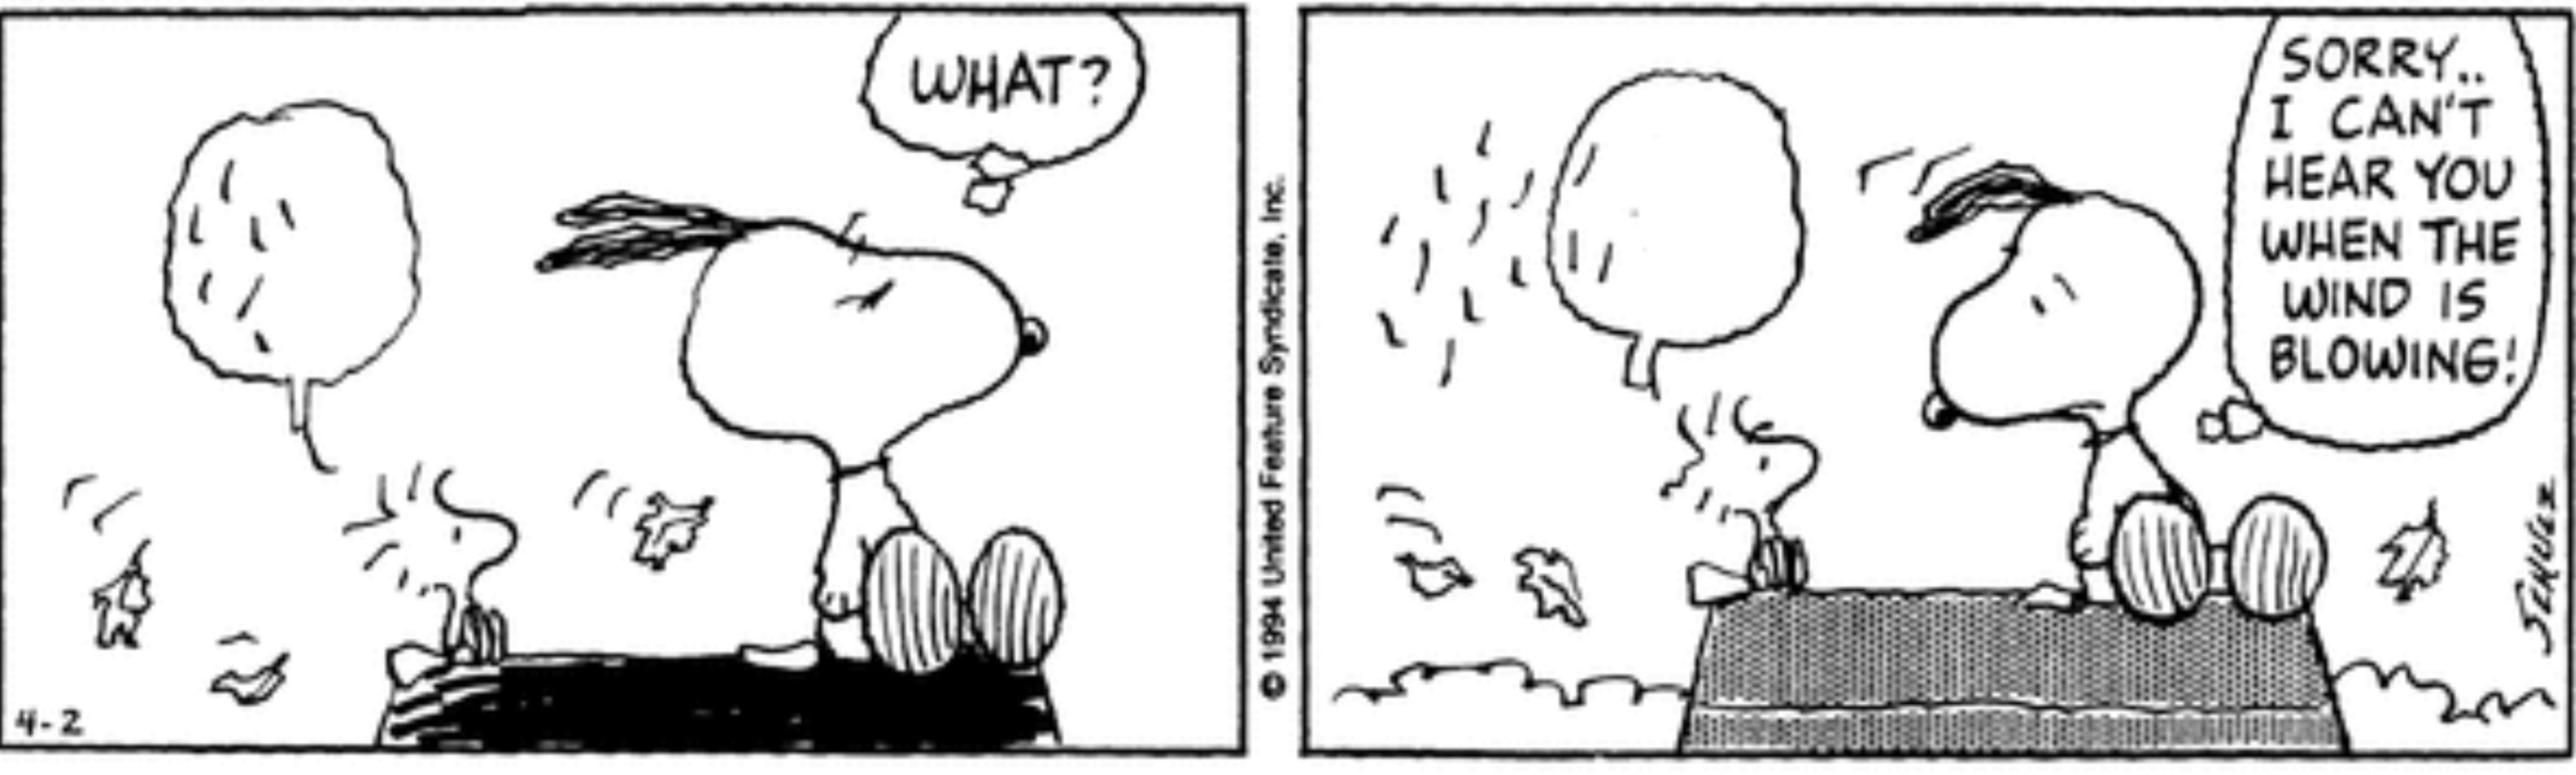 Peanuts, the wind blows away Woodstock's speech bubble.